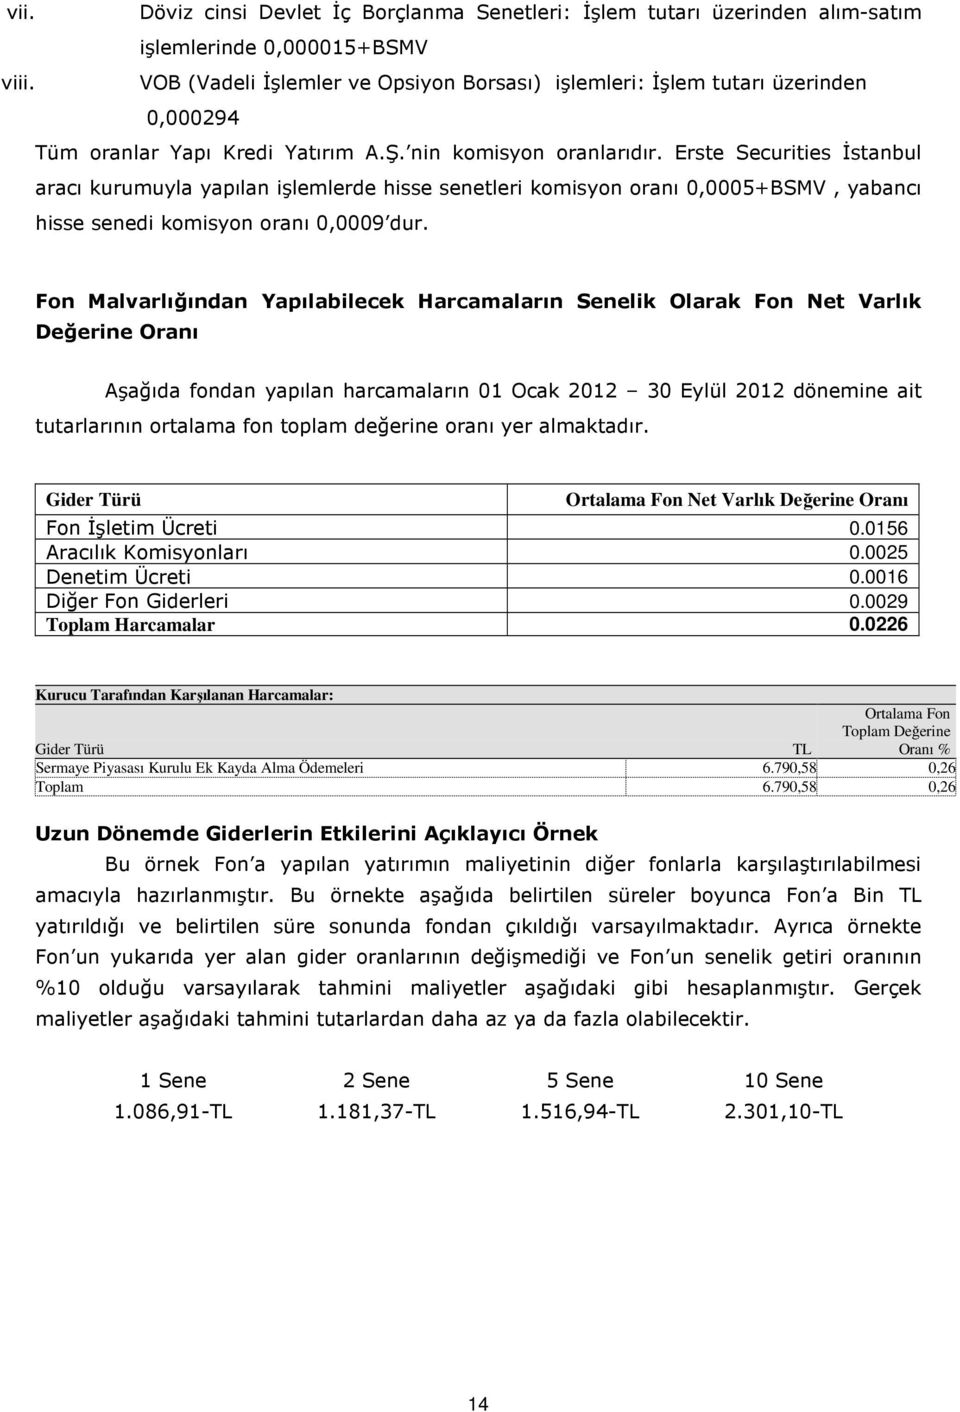 Erste Securities İstanbul aracı kurumuyla yapılan işlemlerde hisse senetleri komisyon oranı 0,0005+BSMV, yabancı hisse senedi komisyon oranı 0,0009 dur.